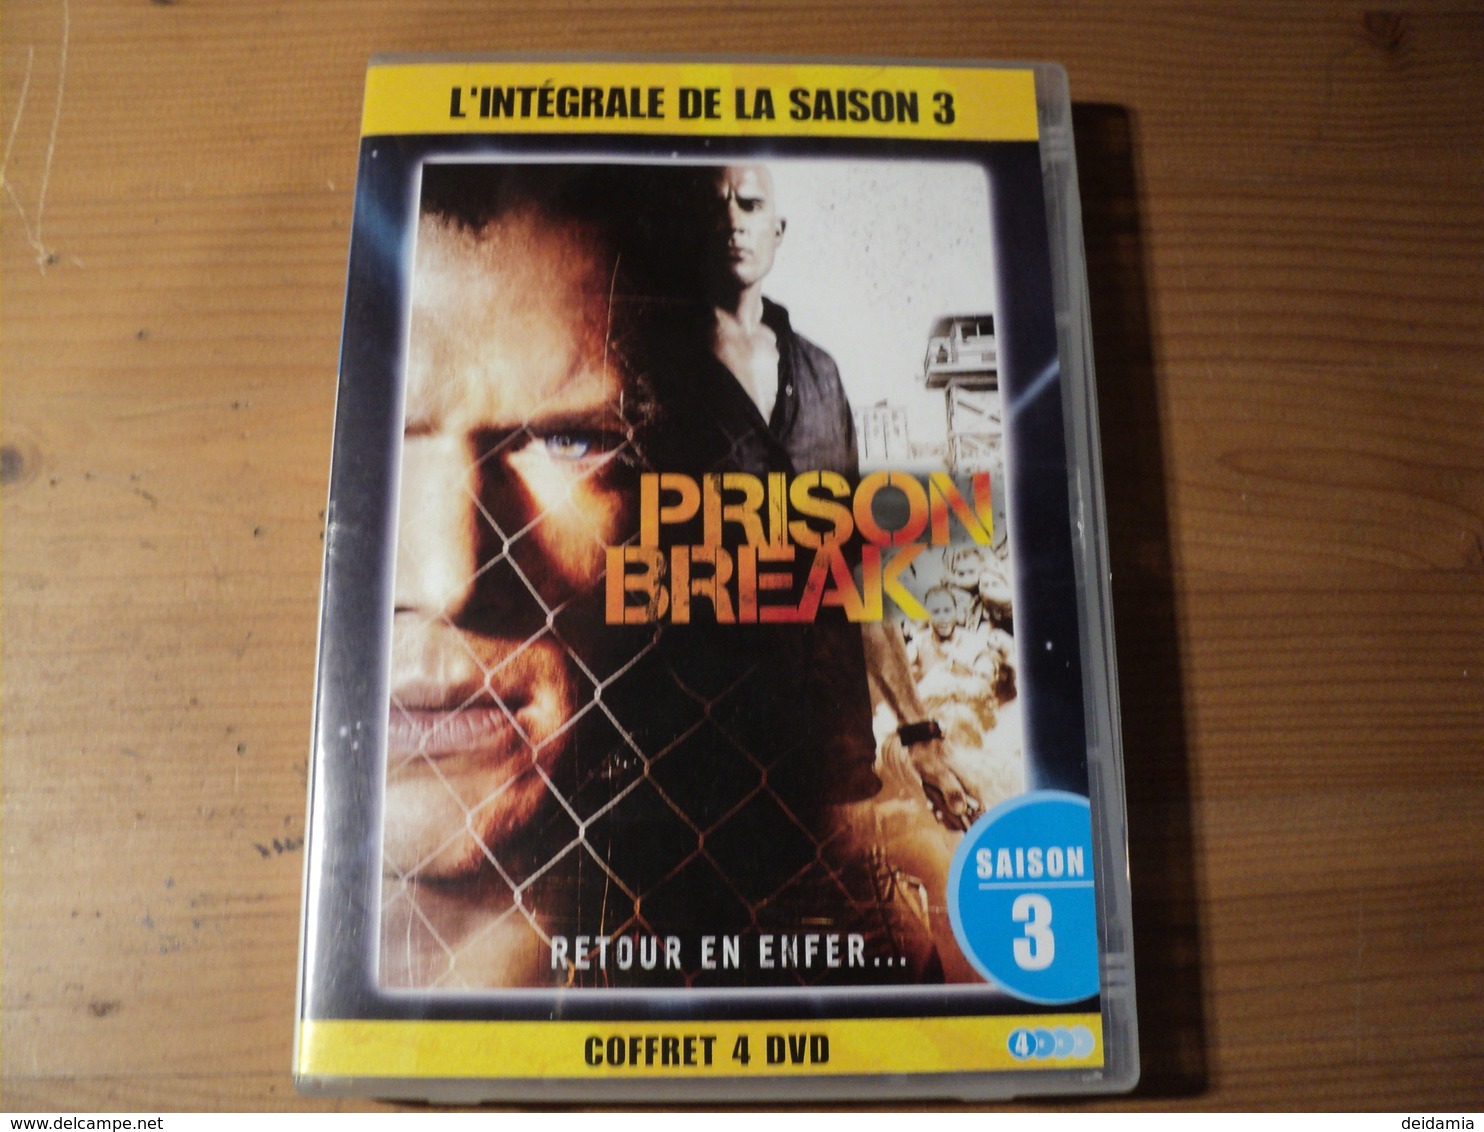 INTEGRALE PRISON BREAK SAISON 3. RETOUR EN ENFER... 2010 4 DVD POUR 13 EPISODES. - TV Shows & Series